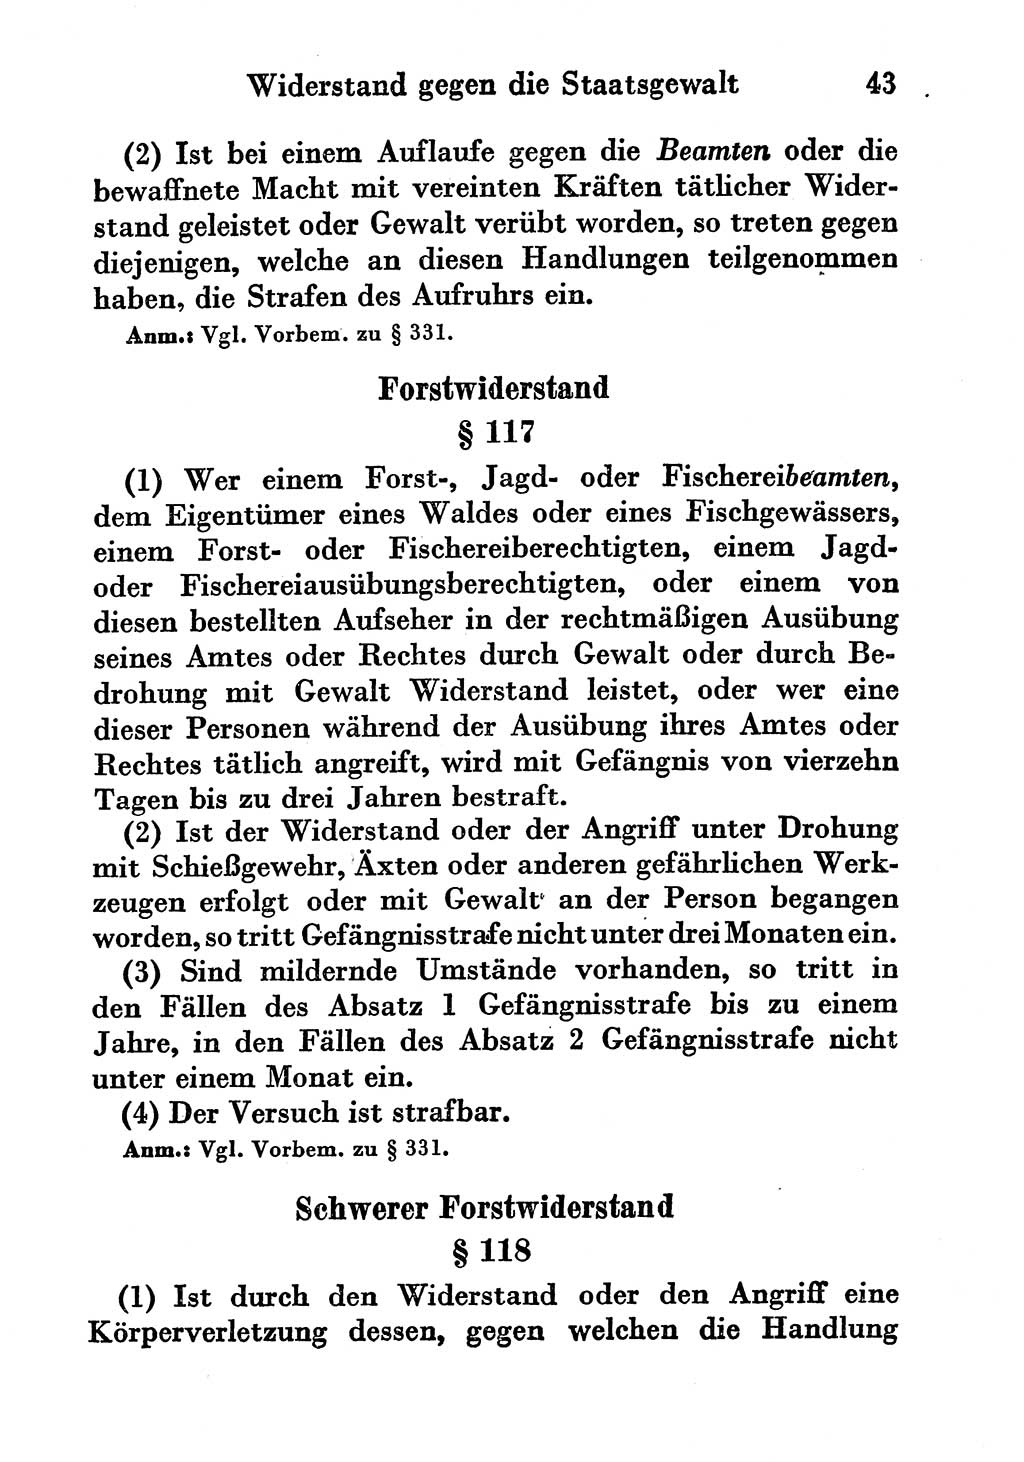 Strafgesetzbuch (StGB) und andere Strafgesetze [Deutsche Demokratische Republik (DDR)] 1956, Seite 43 (StGB Strafges. DDR 1956, S. 43)